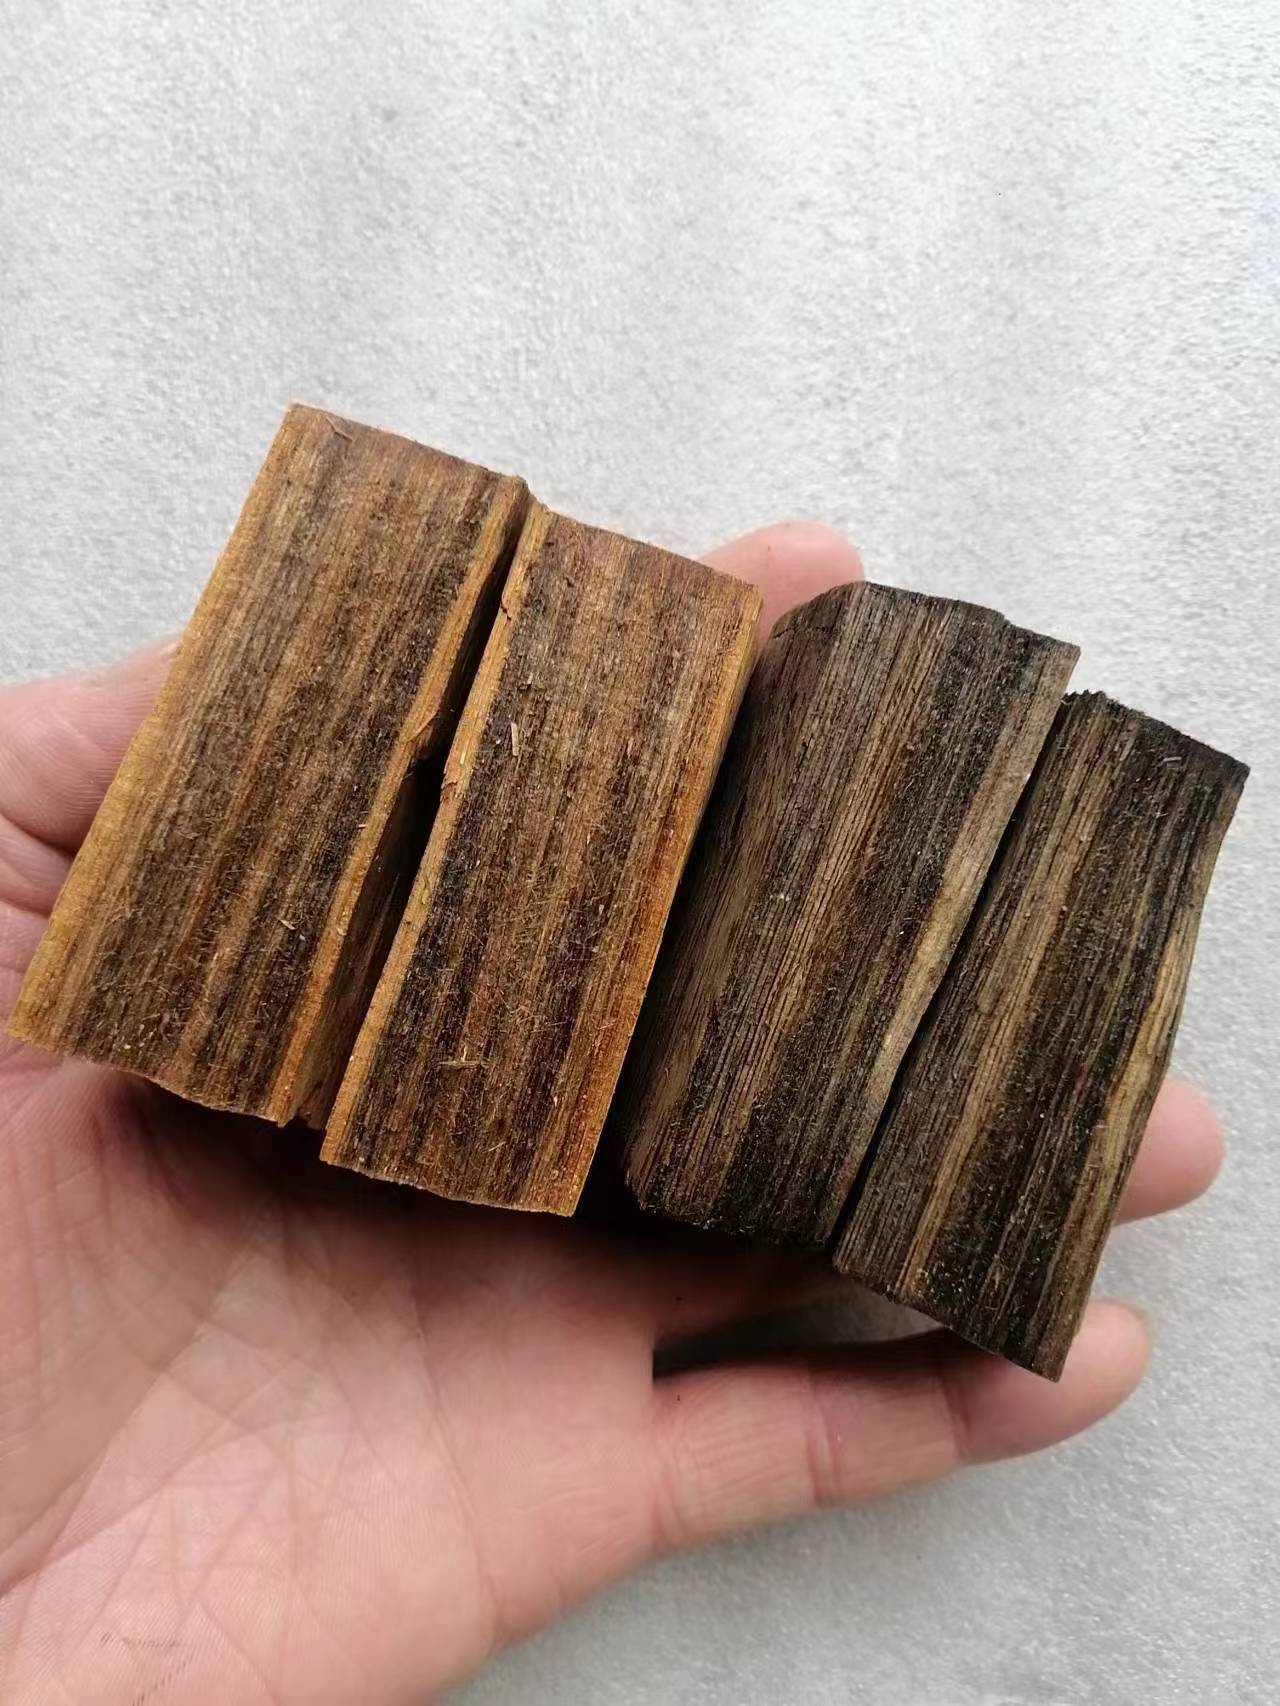 一道林化厂家销售木美啦名贵木材改色剂 颜色自然稳定纹理清晰